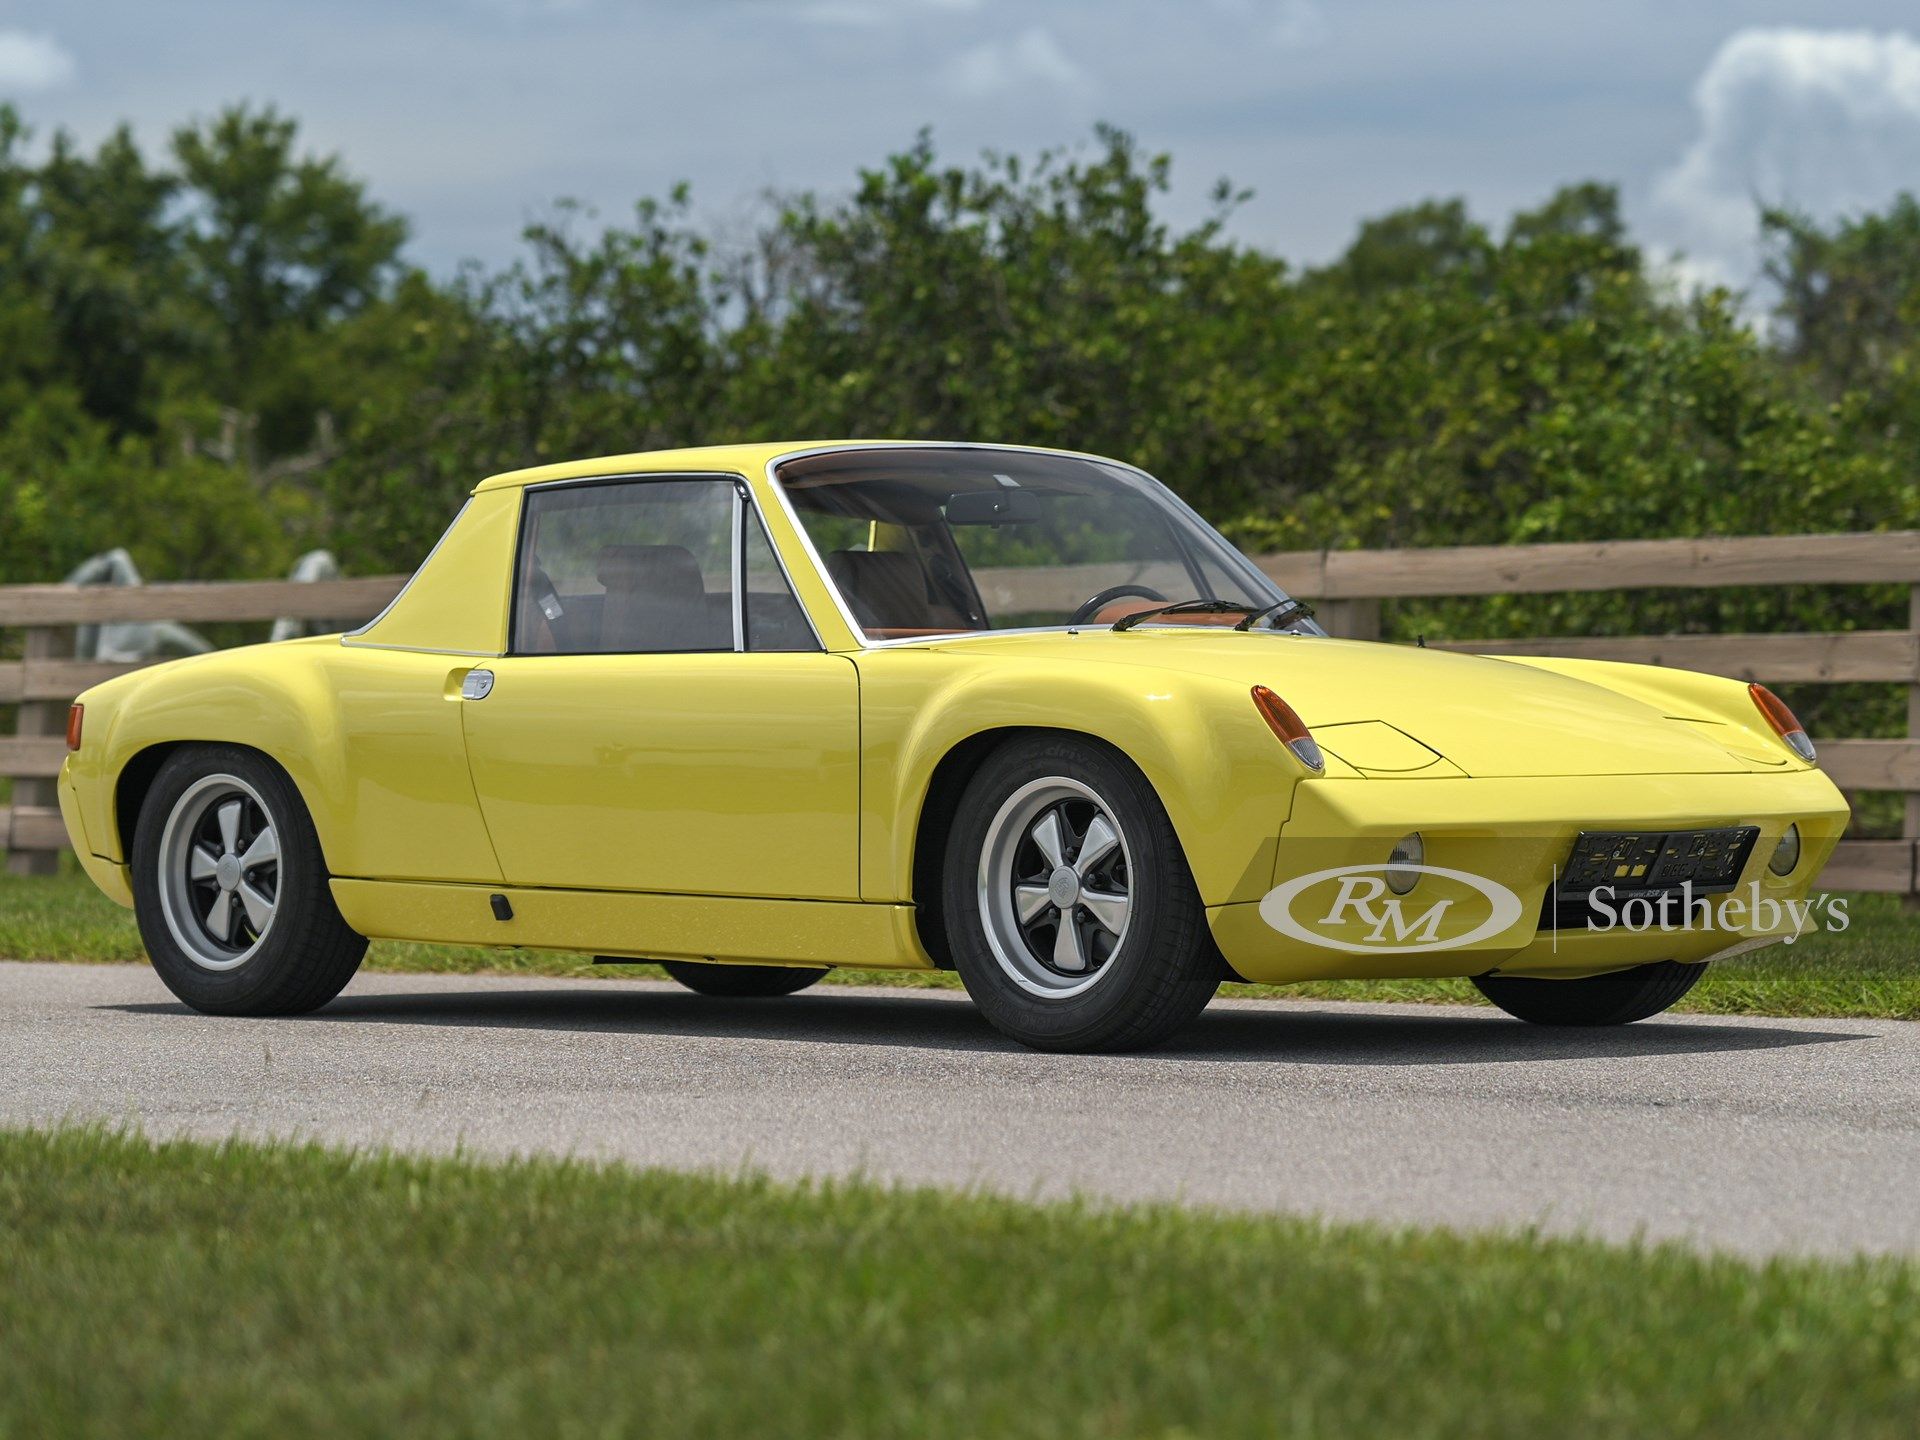 <img src="1972-porsche-916.jpg" alt="An ultra-rare 1972 Porsche 916 prototype">